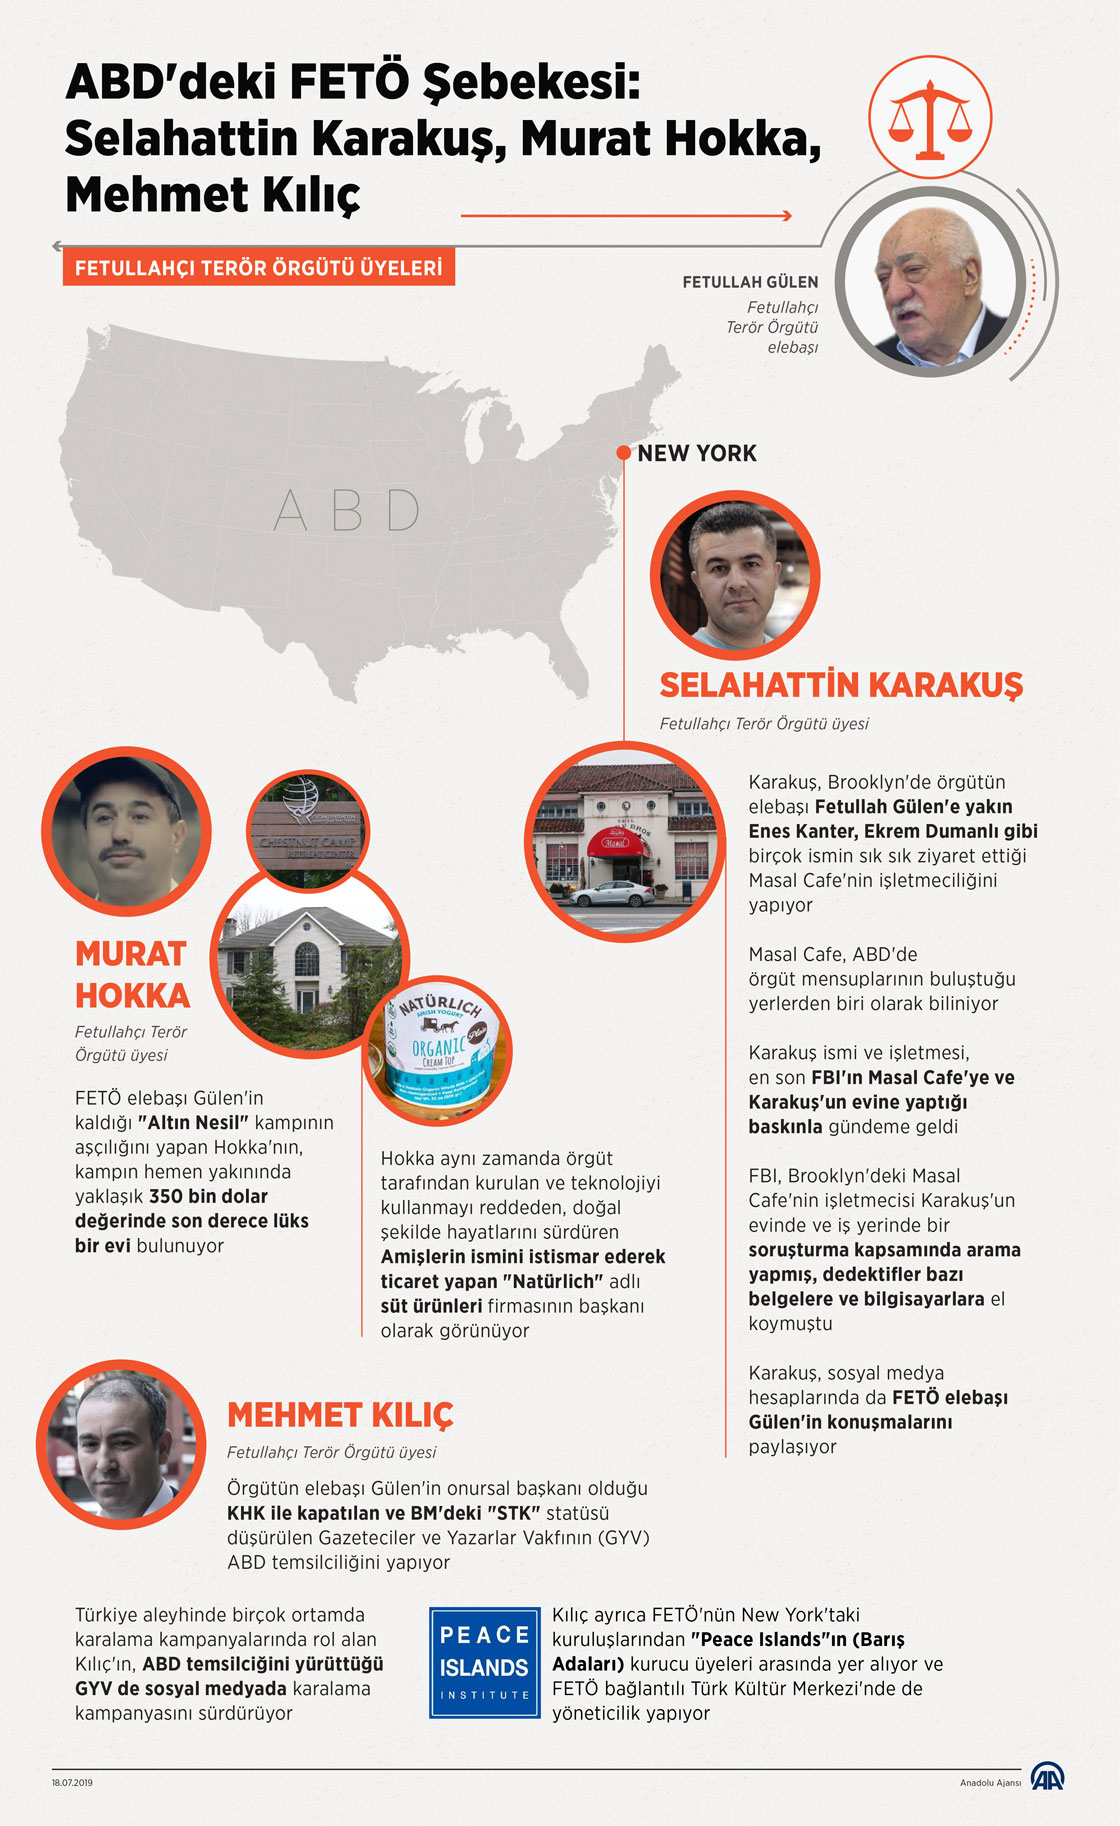 ABD'deki FETÖ Şebekesi: Selahattin Karakuş, Murat Hokka, Mehmet Kılıç